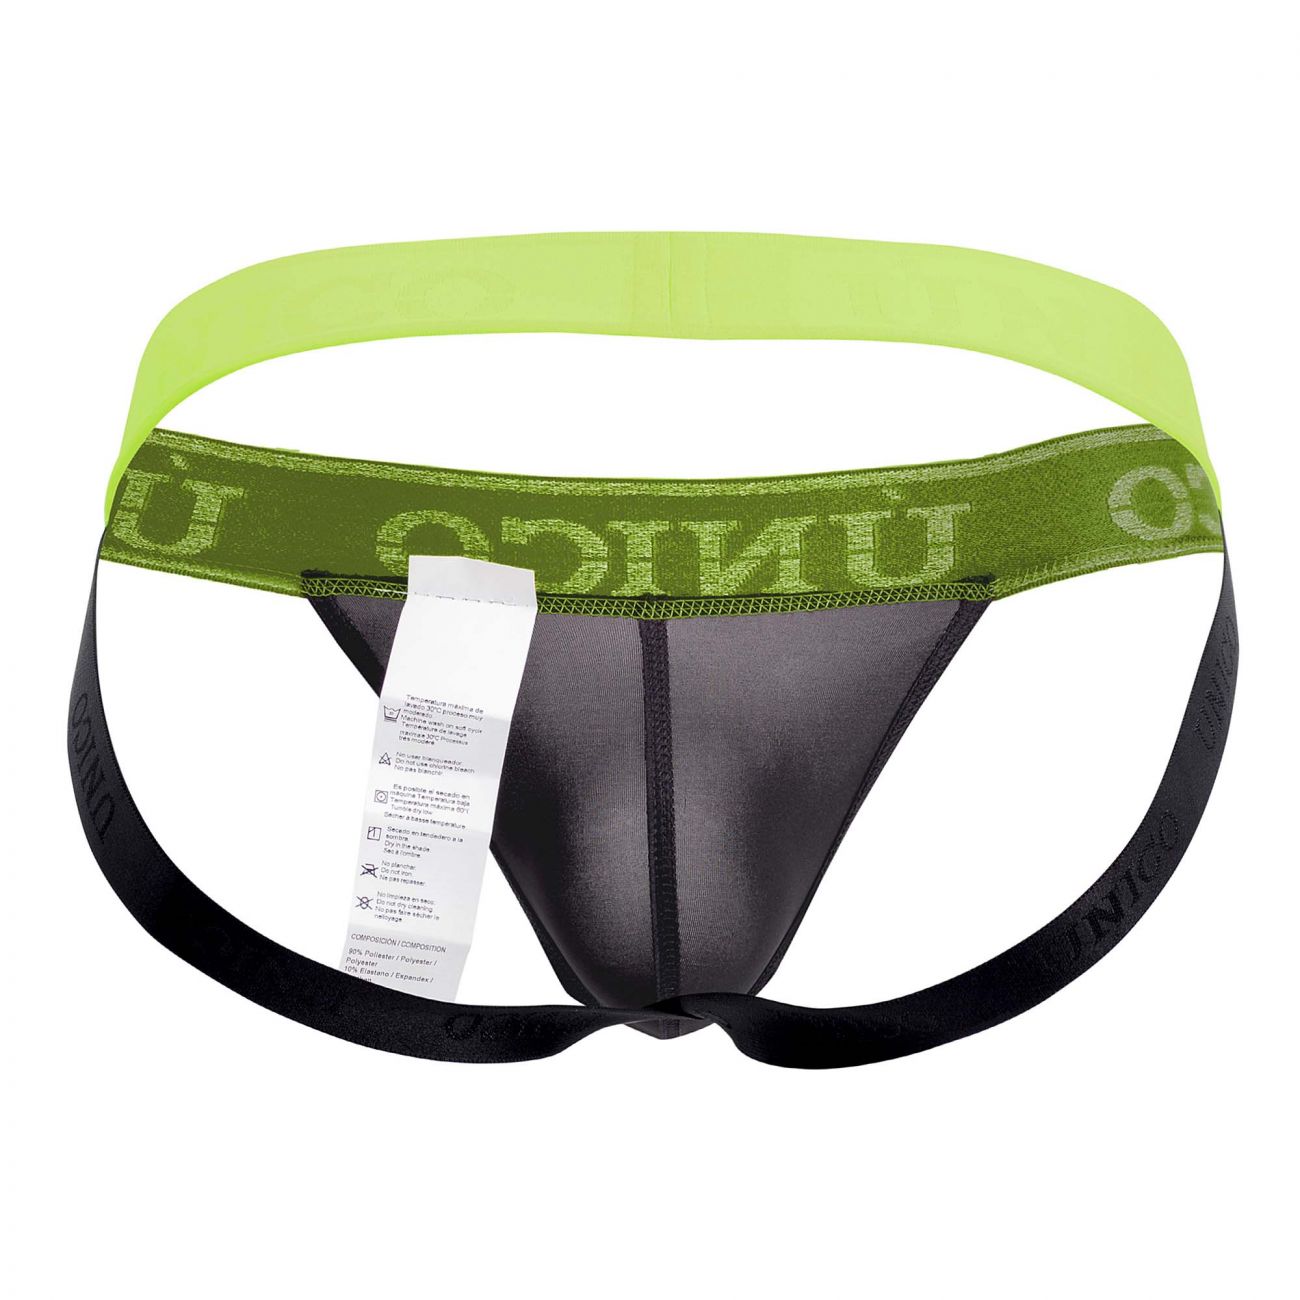 Mens Underwear: Unico 19160301211 COLORS Captacion Jockstrap | eBay